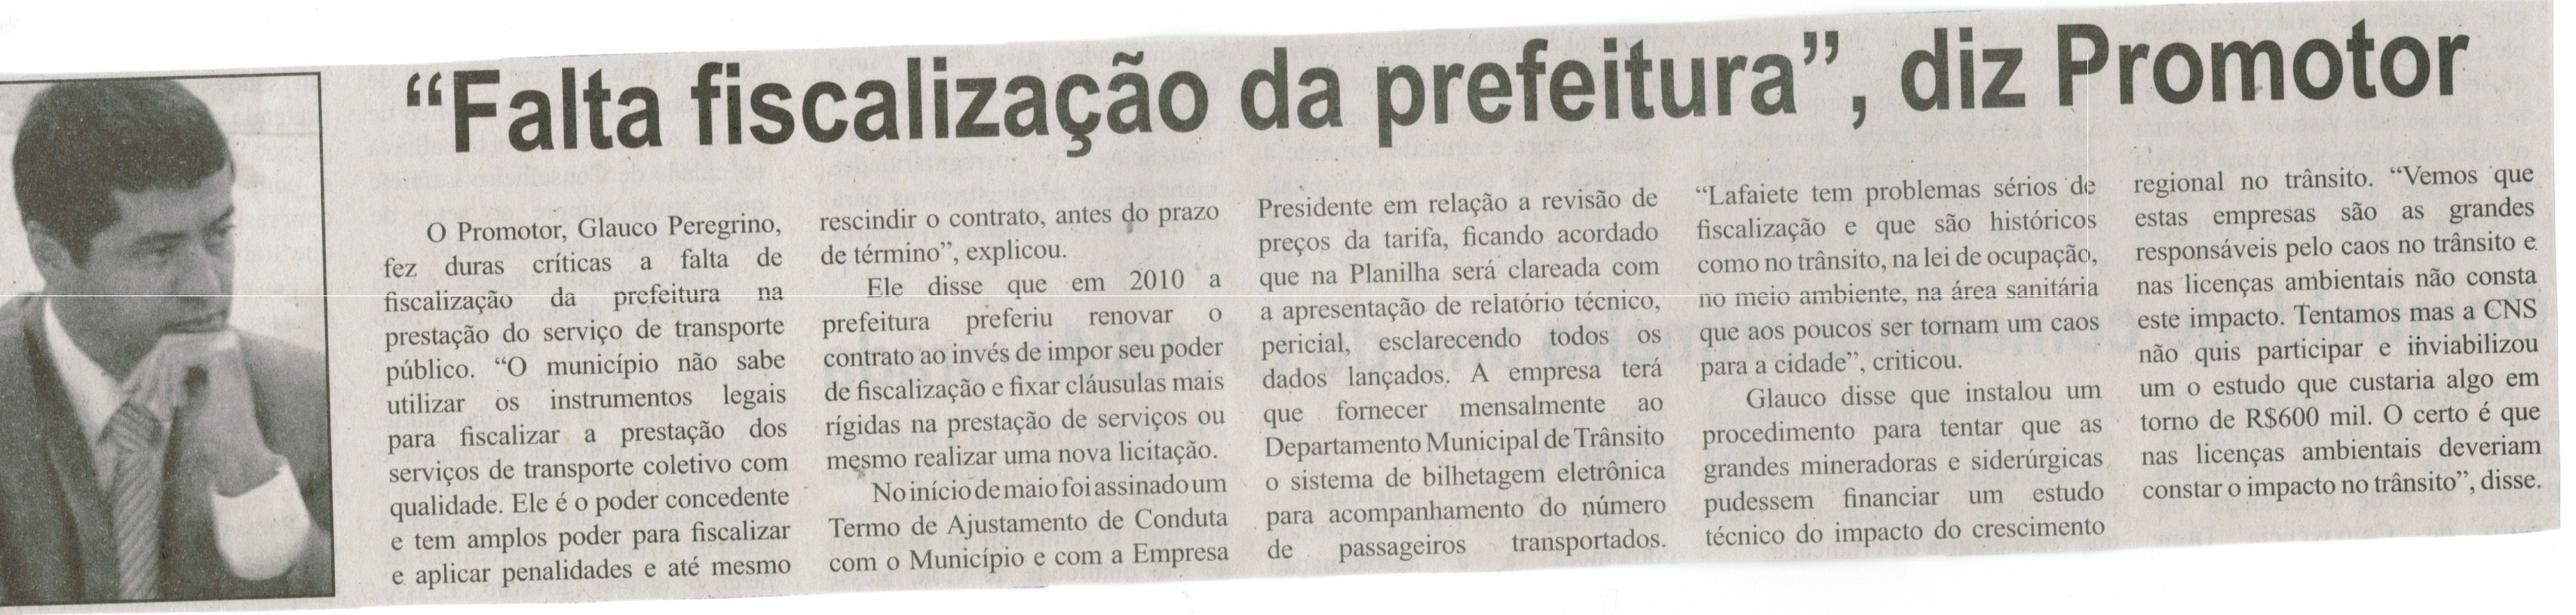 "Falta fiscalização da prefeitura", diz Promotor. Correio de Minas, Conselheiro Lafaiete, 31 mai. 2014, p. 5.